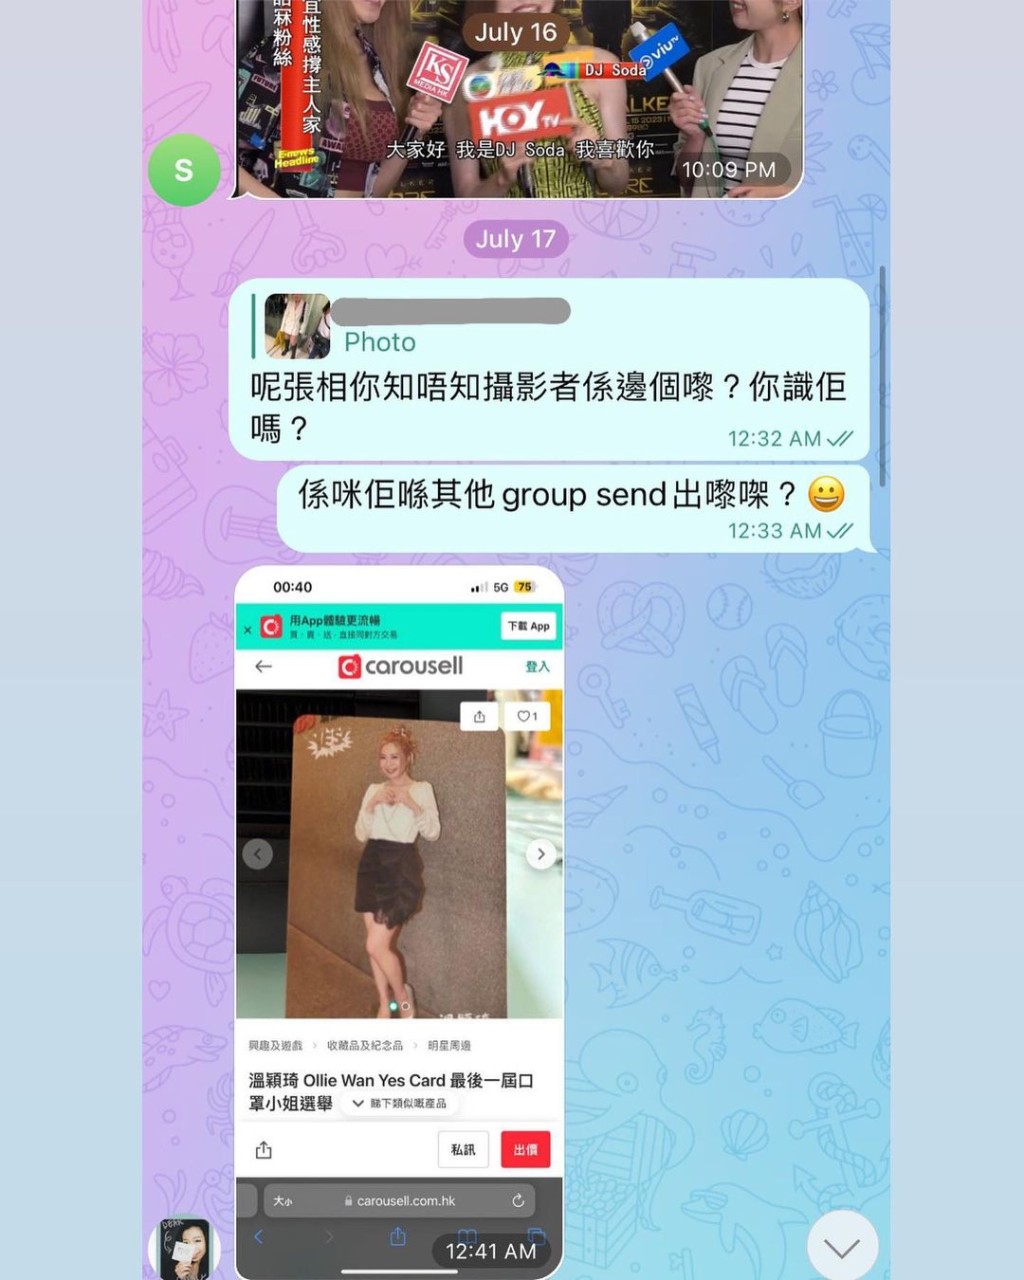 温颖琦透露出post前已在tg得悉事件，并希望该粉丝能收手。